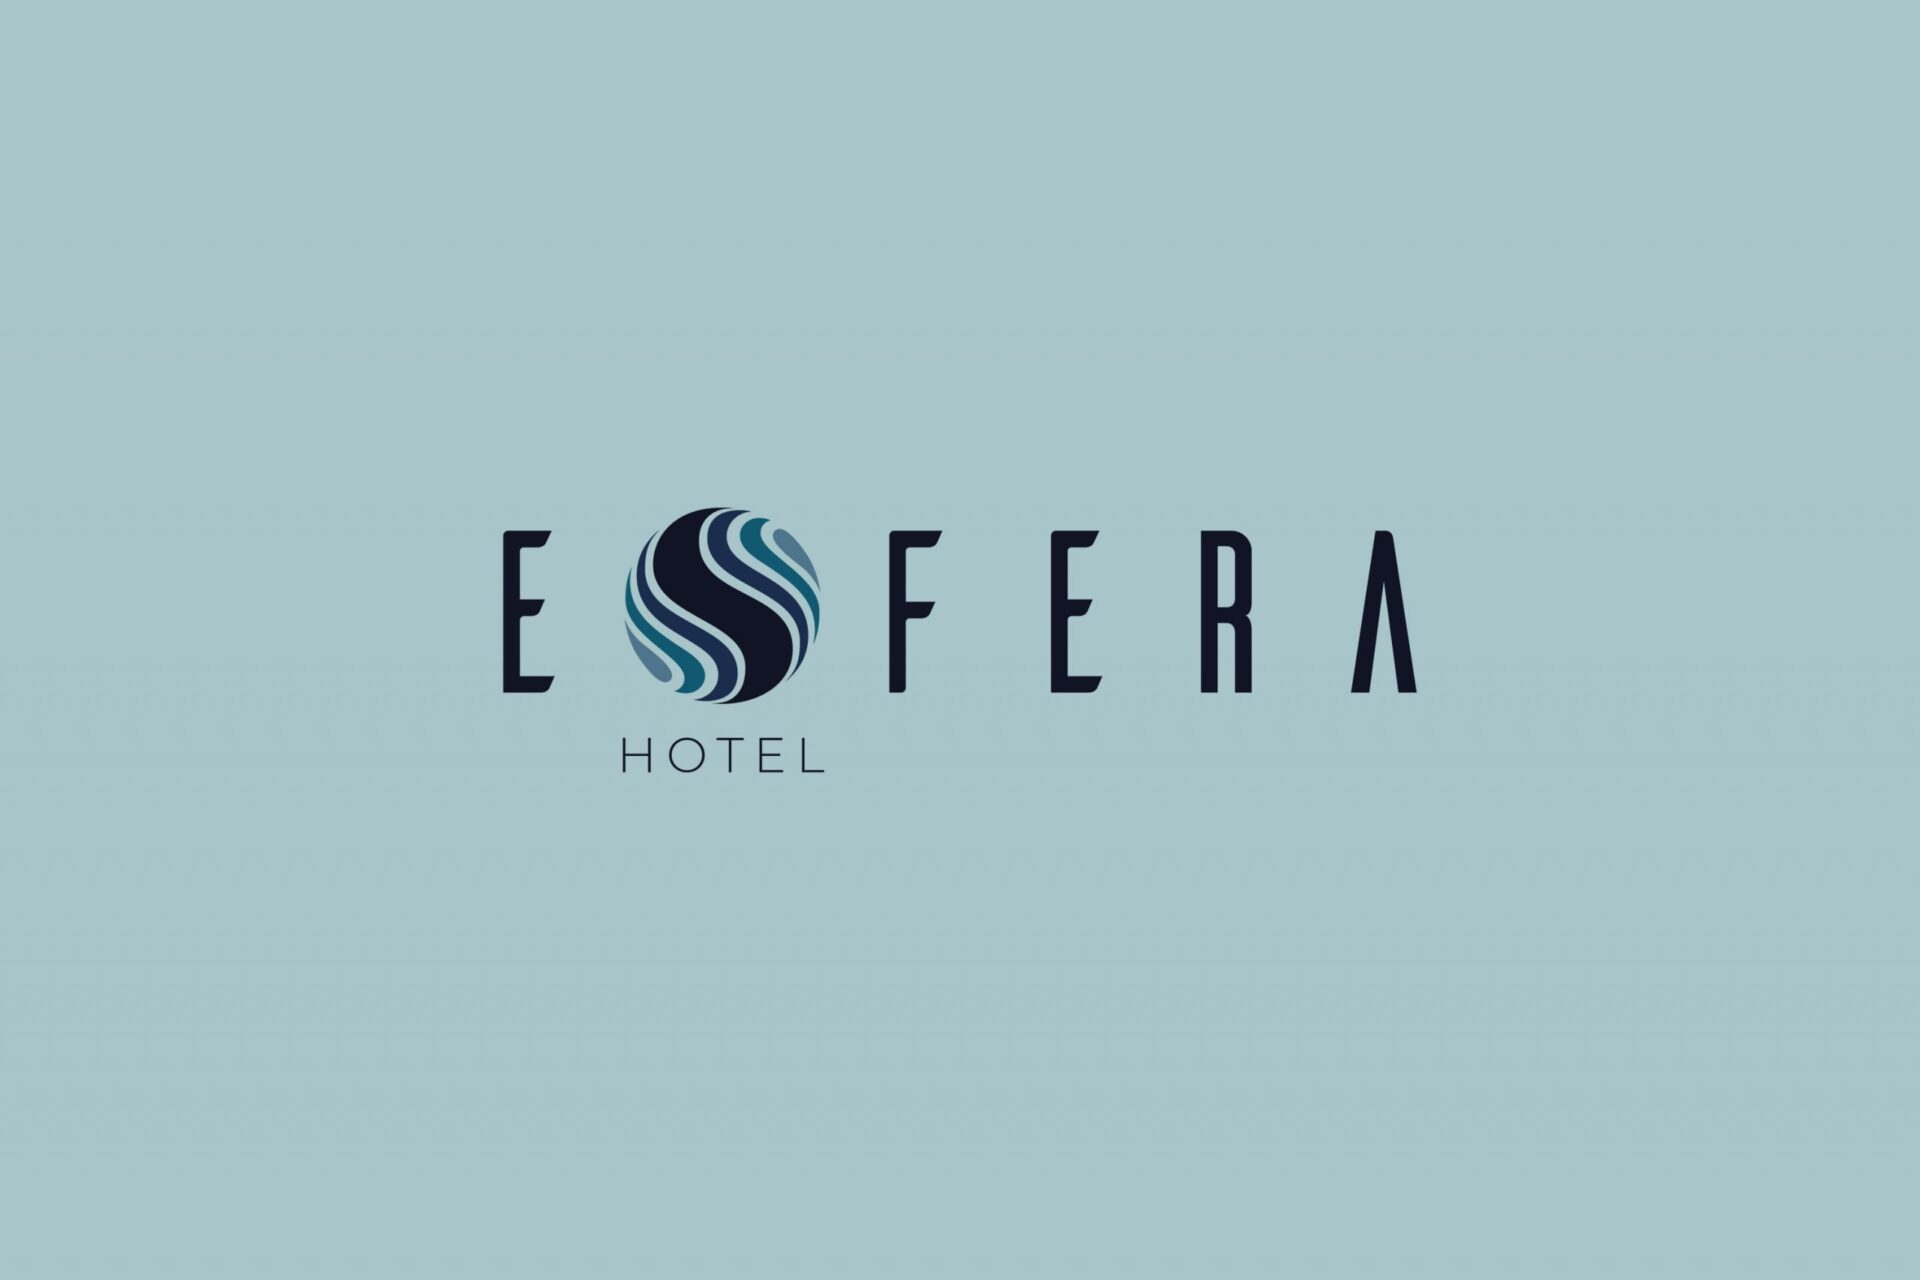 Hotel-Esfera-Branding-01